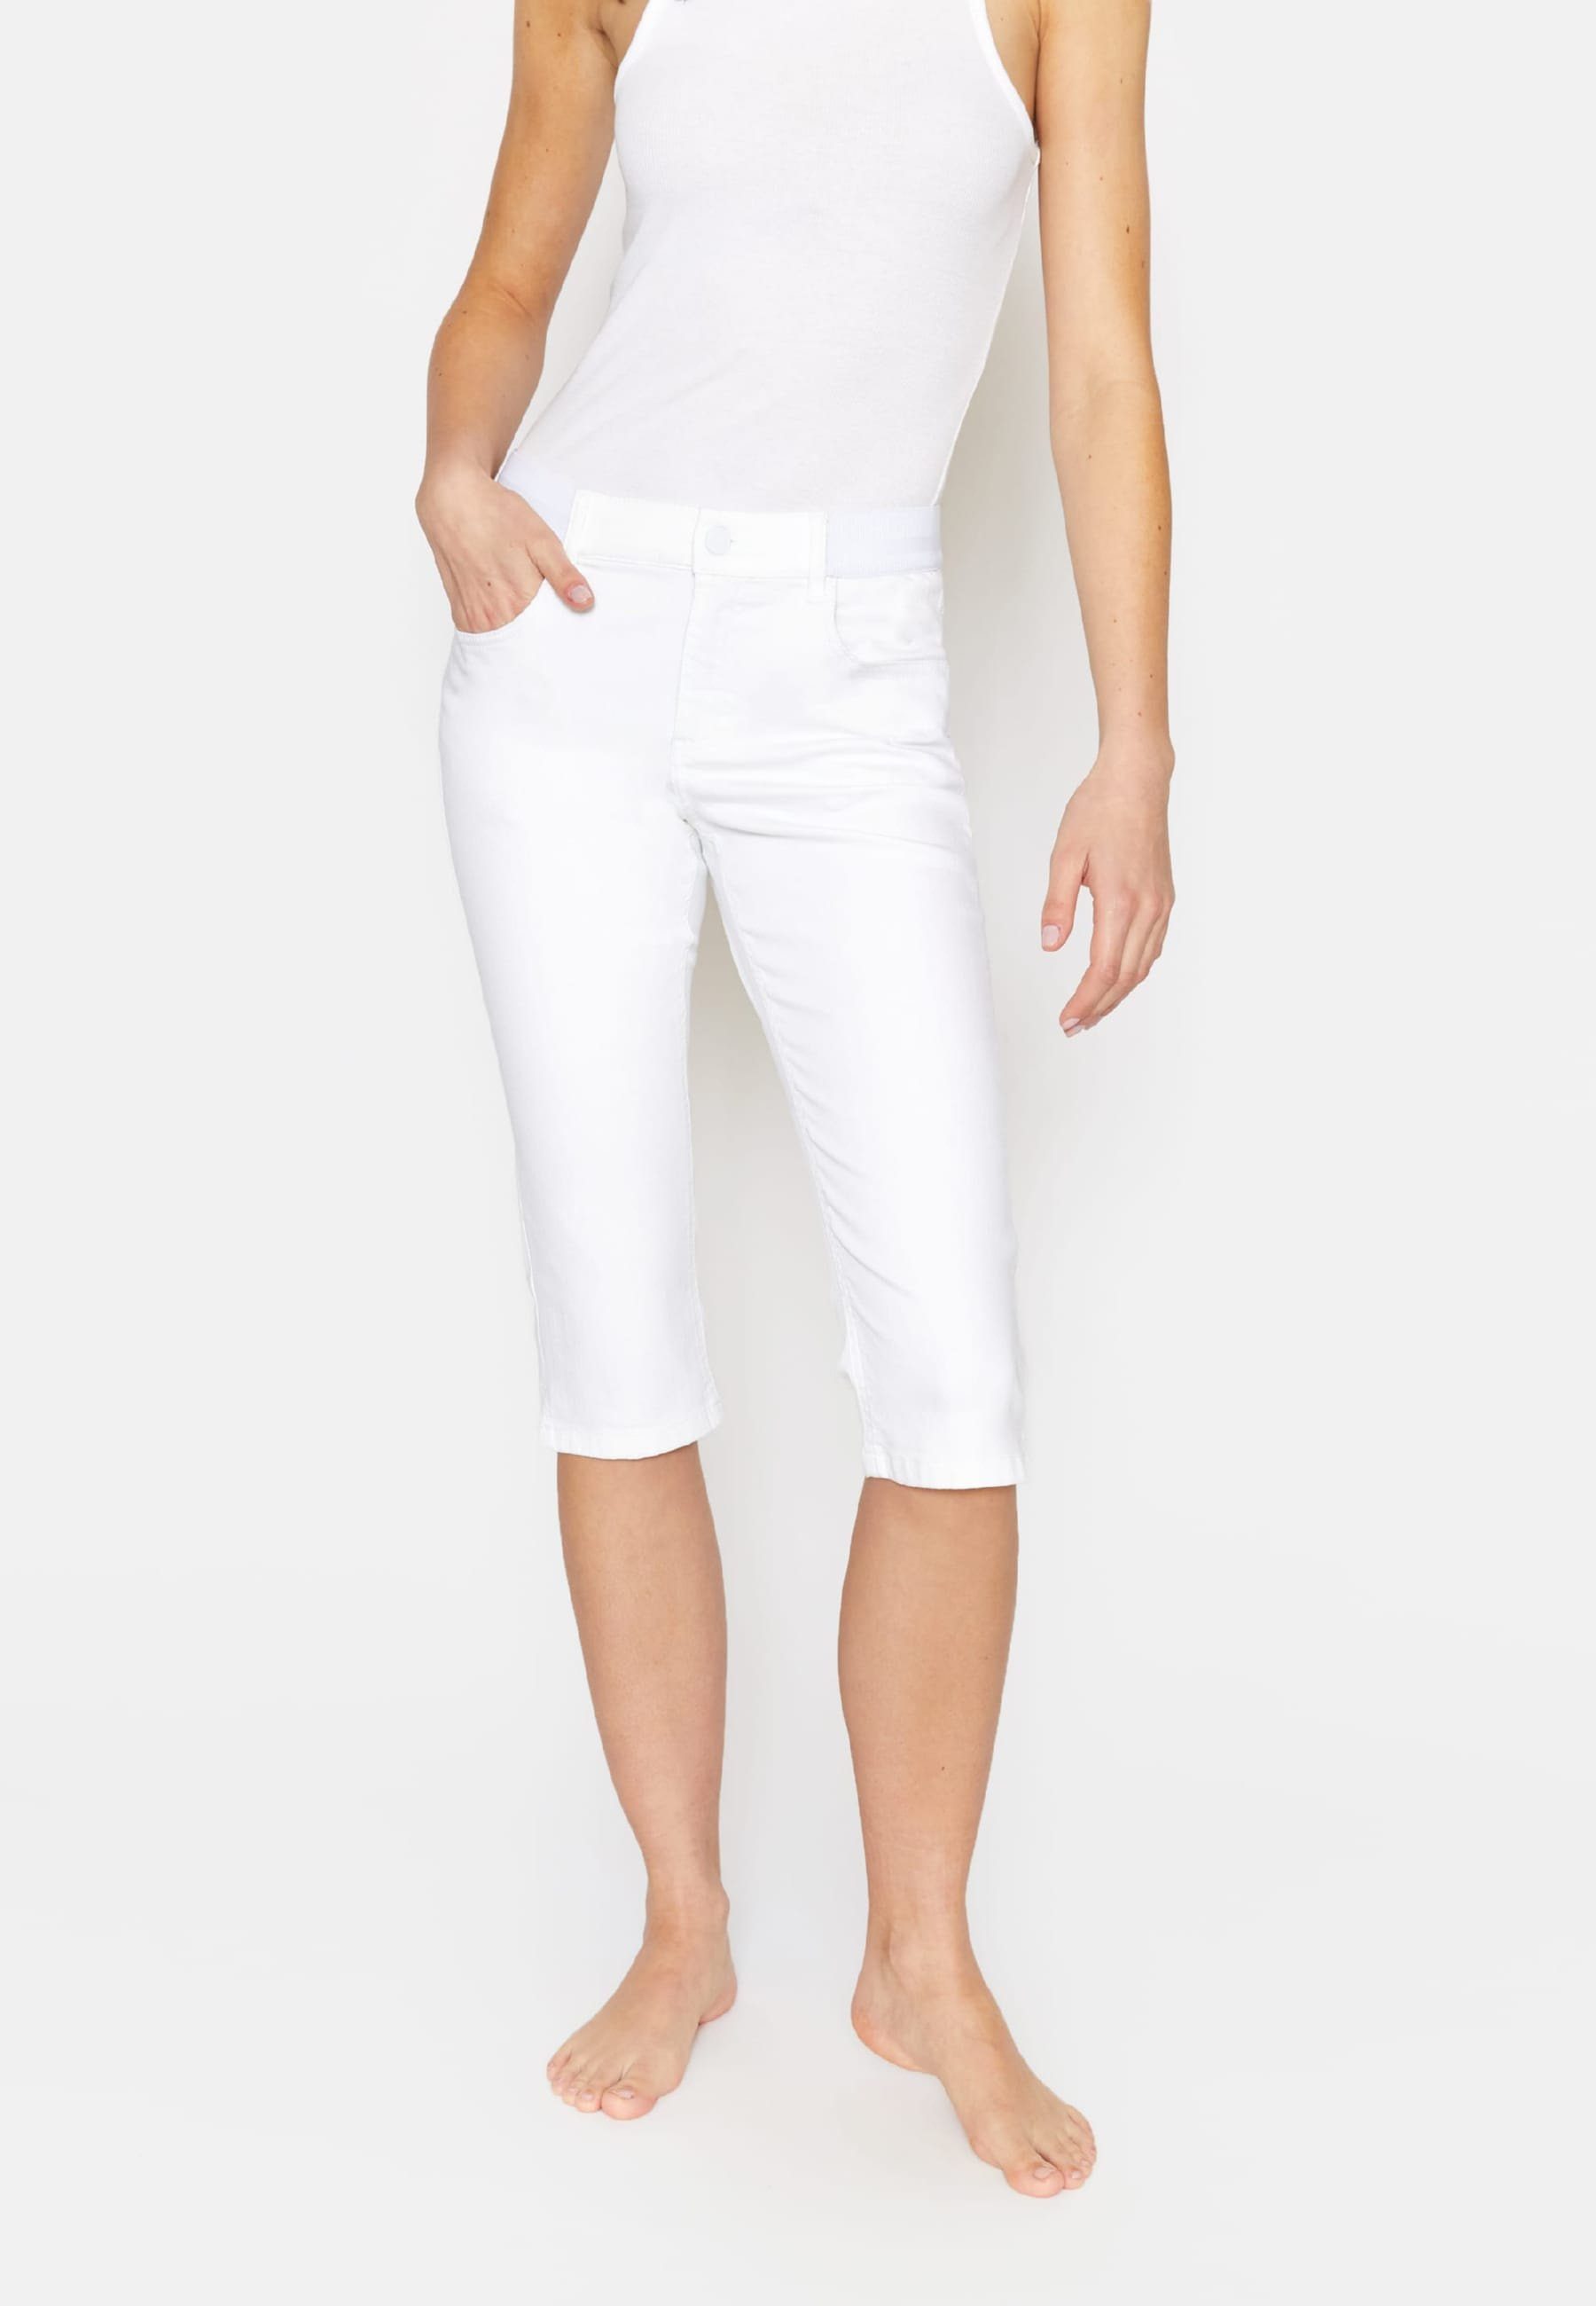 ANGELS Kurze Jeans Onesize klassischem weiß Design Capri Dehnbund-Jeans mit